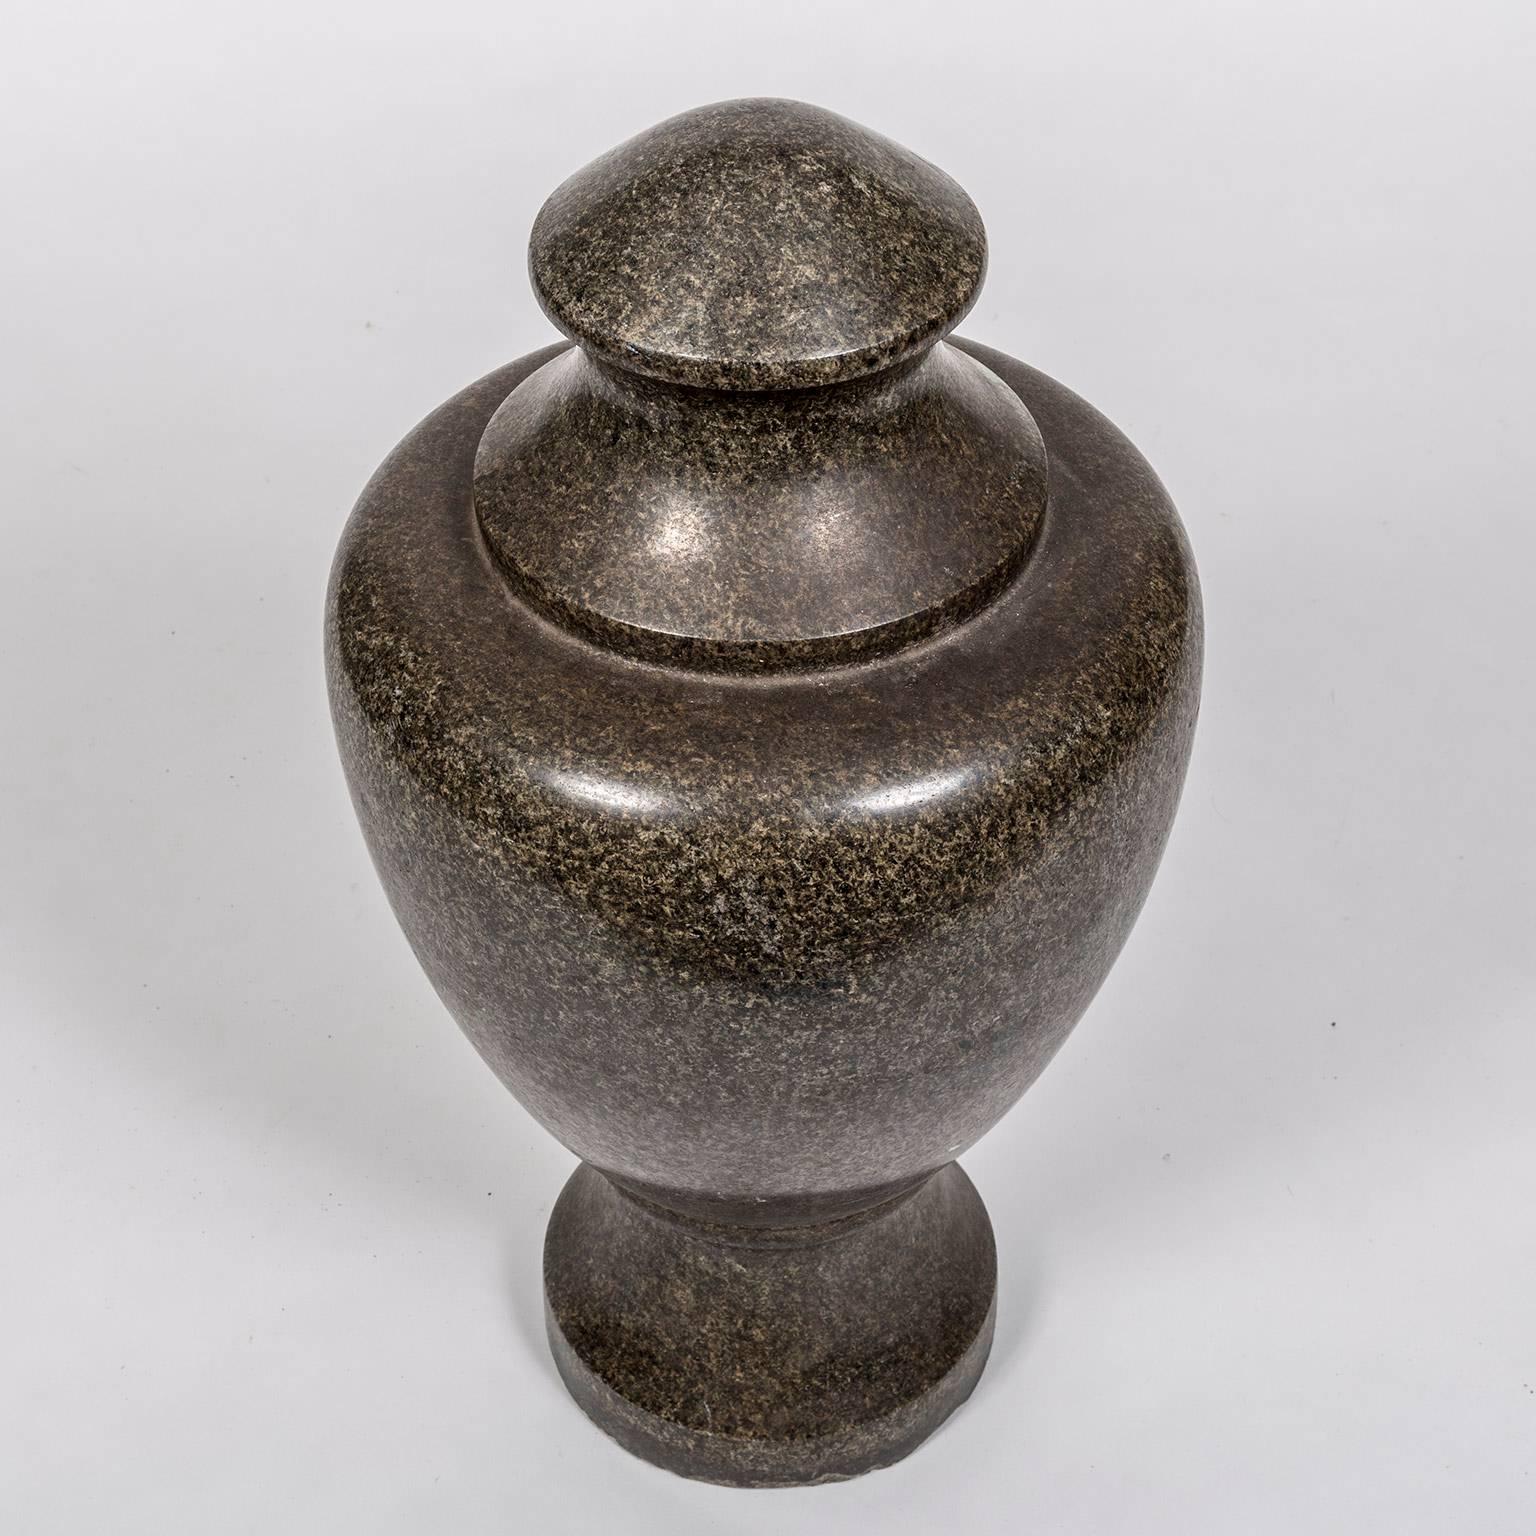 dekorative Vase aus Granitstein im Grand-Tour-Stil des 19. Jahrhunderts. Granit ist ein sehr hartes Eruptivgestein, das ein sehr ansprechendes körniges Dekor aufweist. Diese beiden Eigenschaften sind der Grund für seine Verwendung in